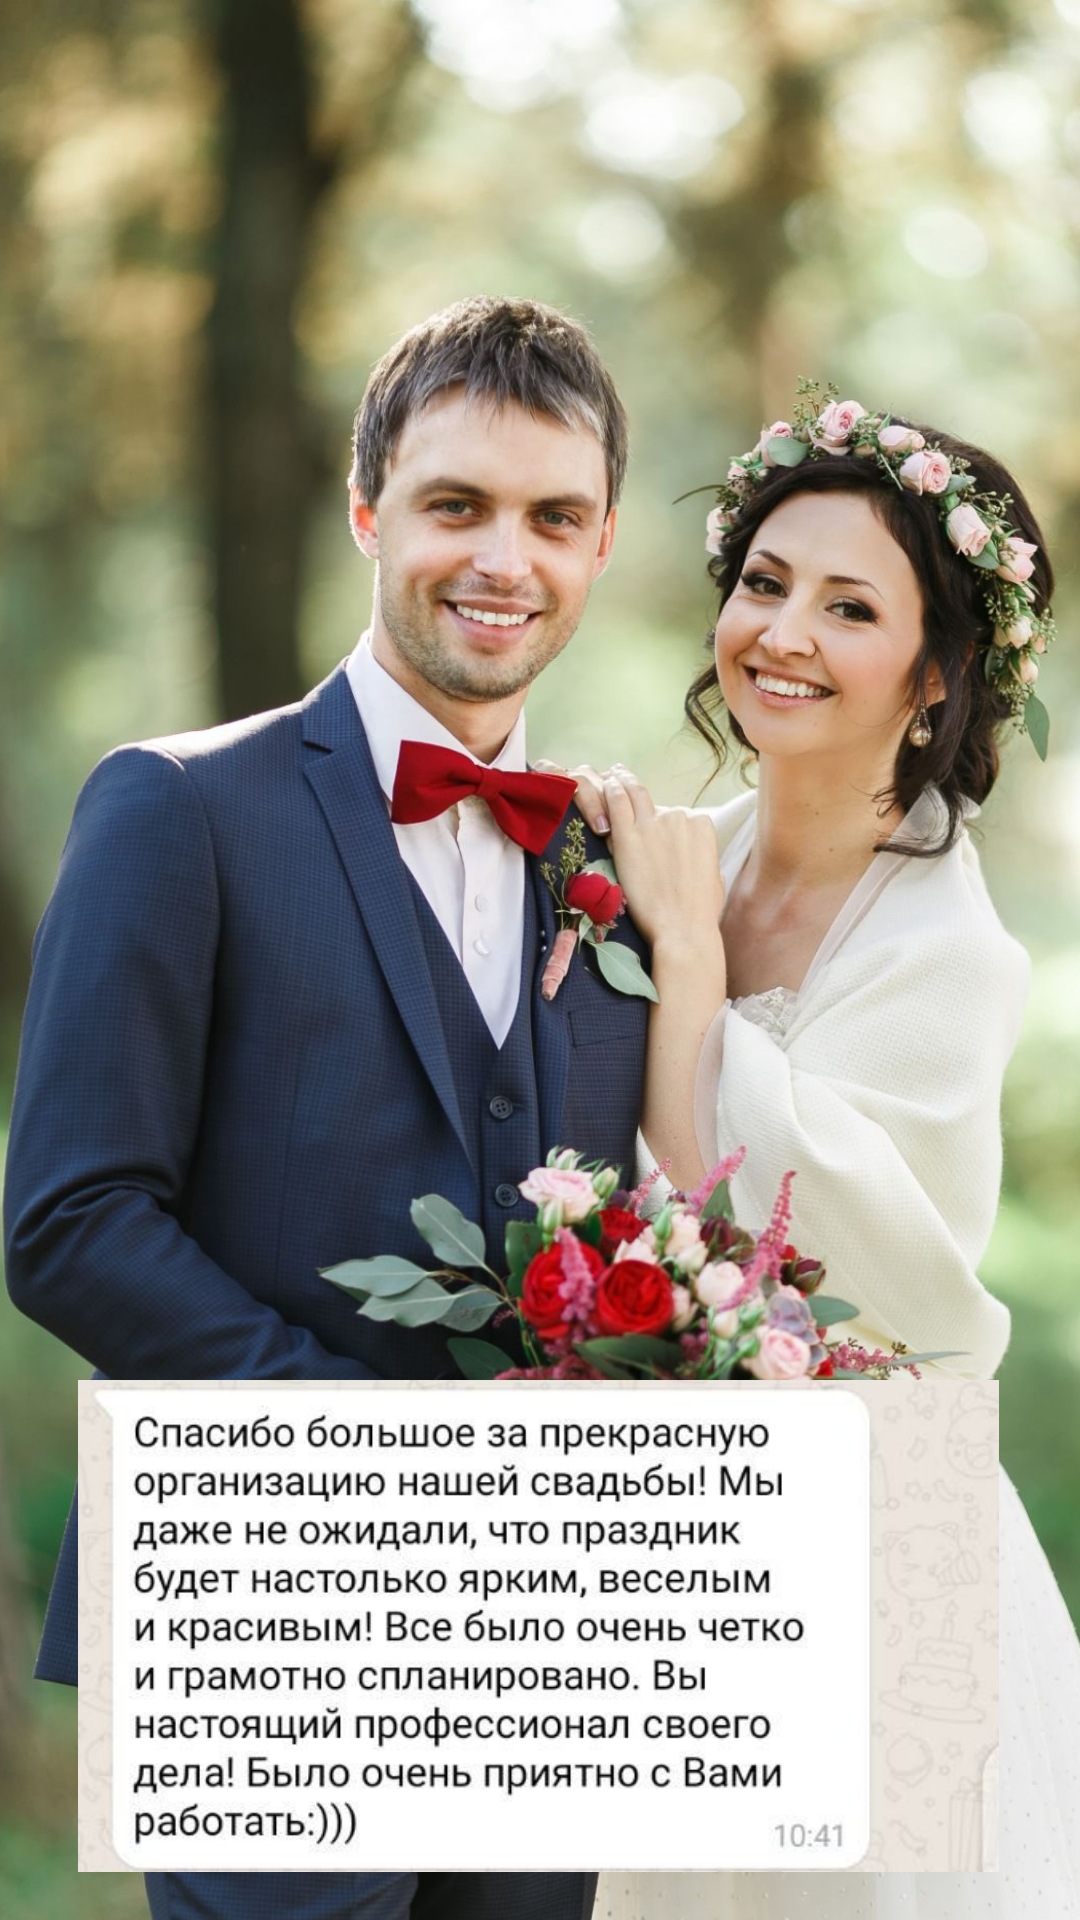 Организация свадьбы в Москве
от компании Pandaevent